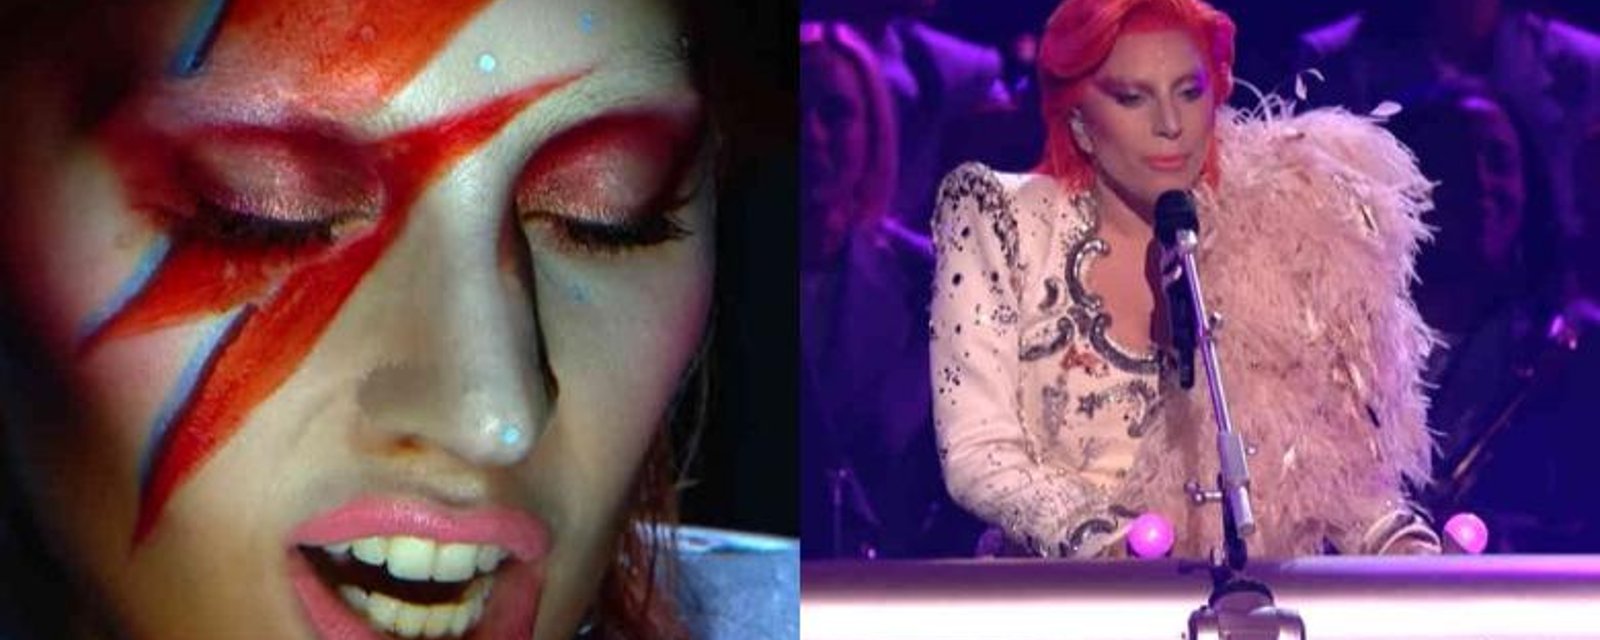 Voici l'inoubliable performance de Lady Gaga en hommage à Bowie aux Grammys, hier!